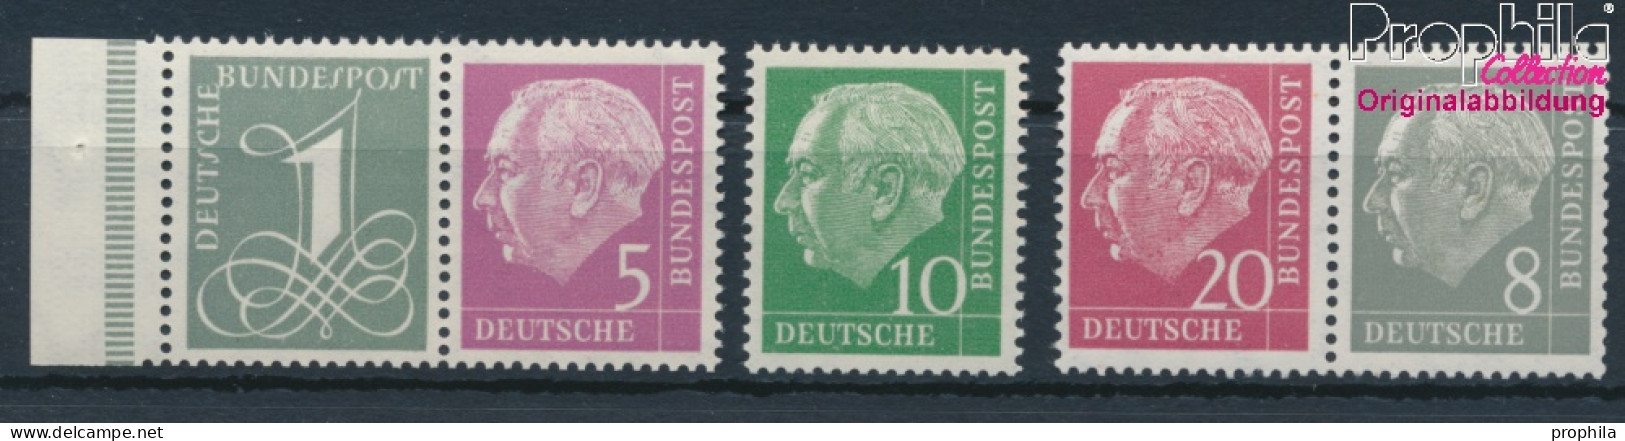 BRD 179Y,182Y,183Y,185Y,285Y (kompl.Ausg.) Liegendes Wasserzeichen Postfrisch 1960 Heuss I (10347826 - Ongebruikt